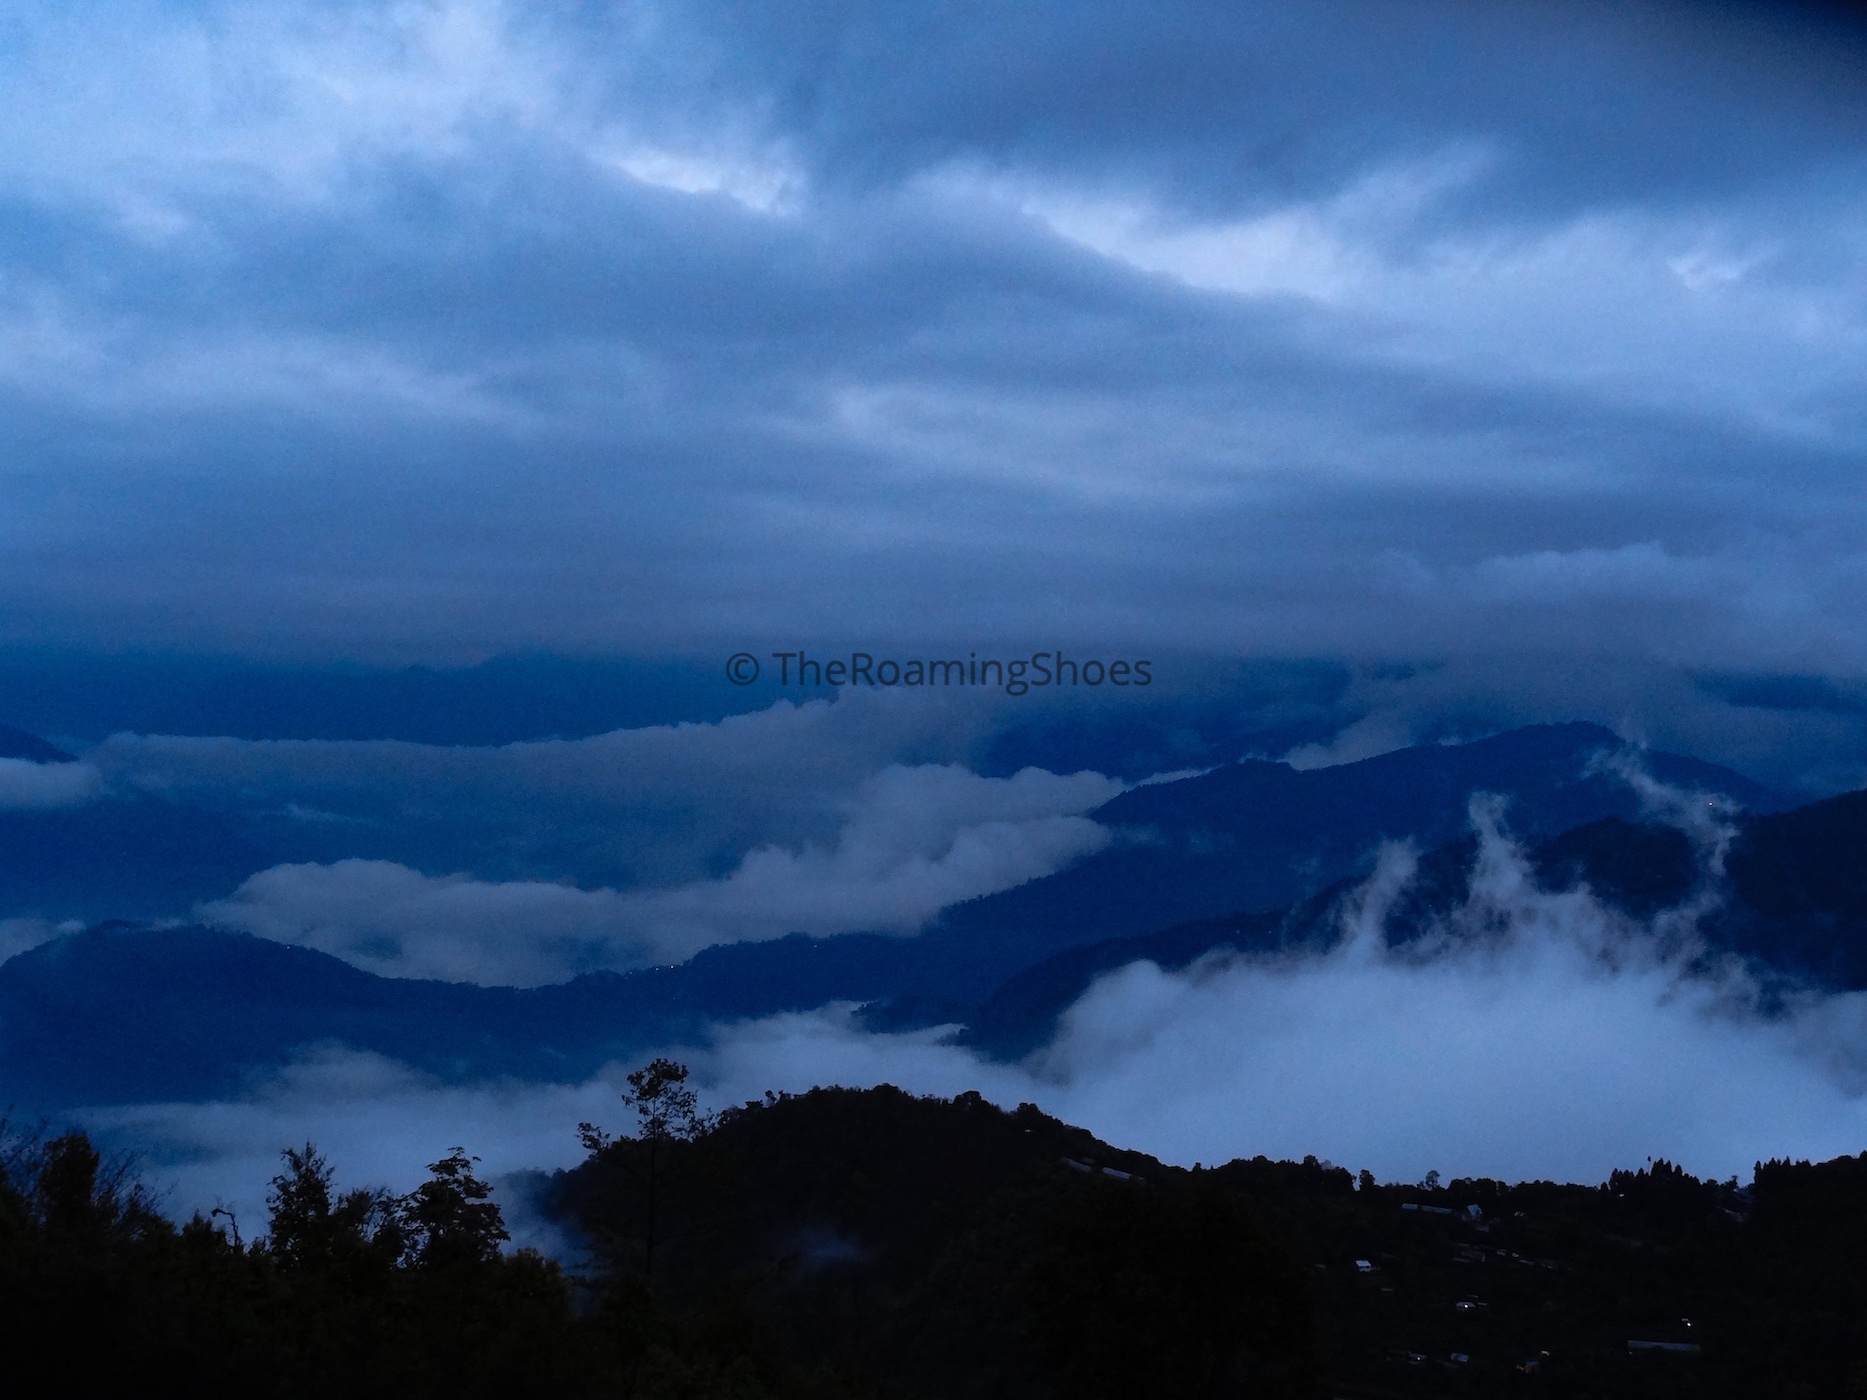 A cloudy evening at Ravangla